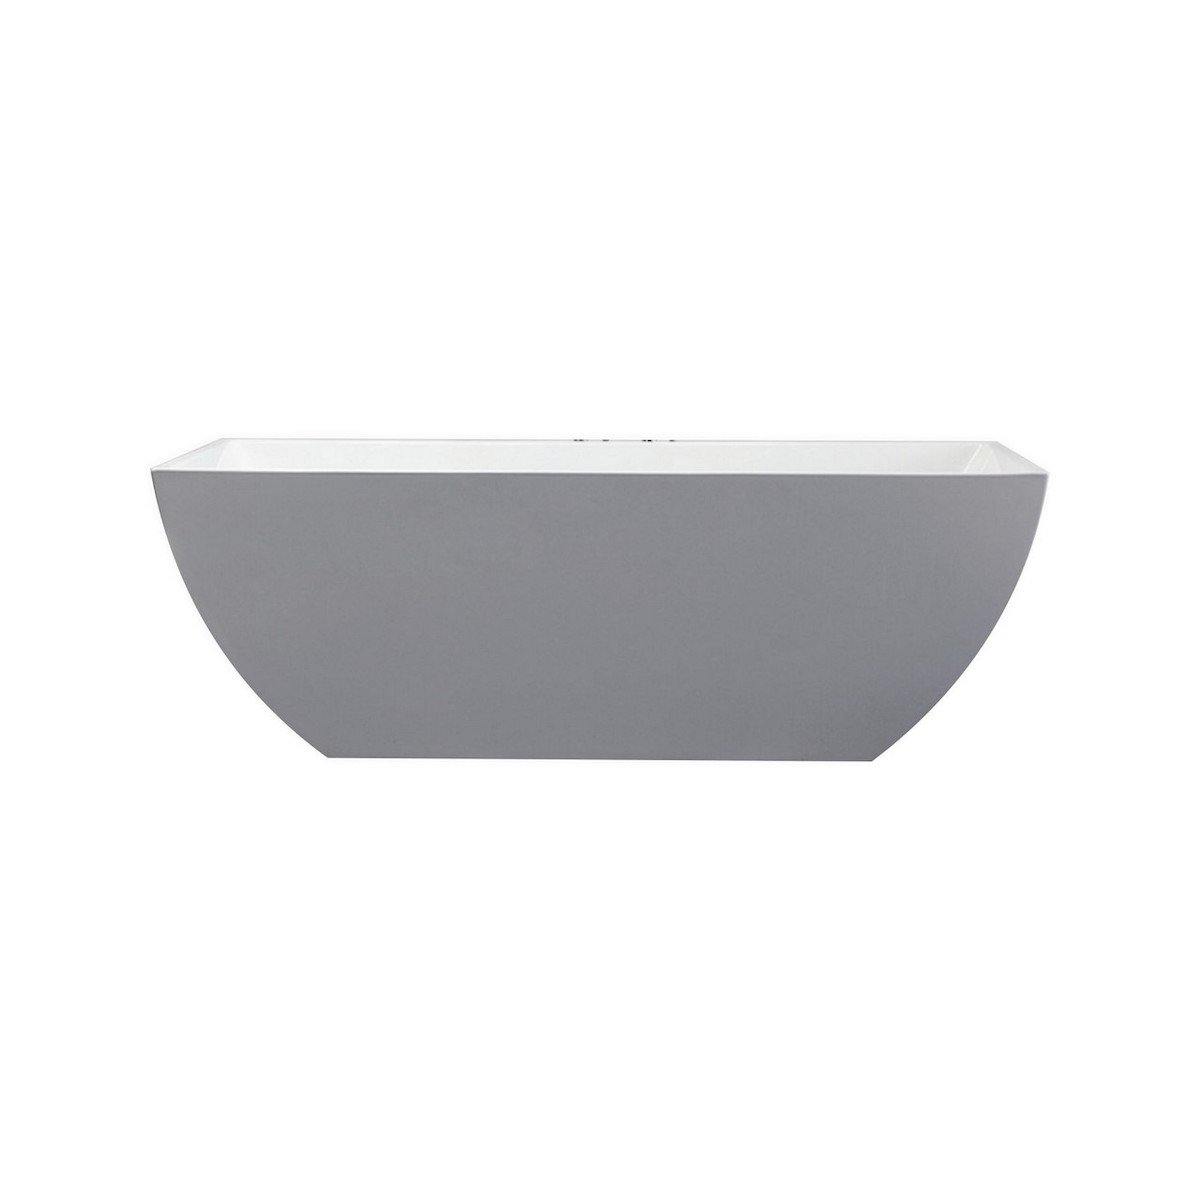 KubeBath Contemporanea 59 Inch White Freestanding Bathtub KFST2159 #size_59 inch